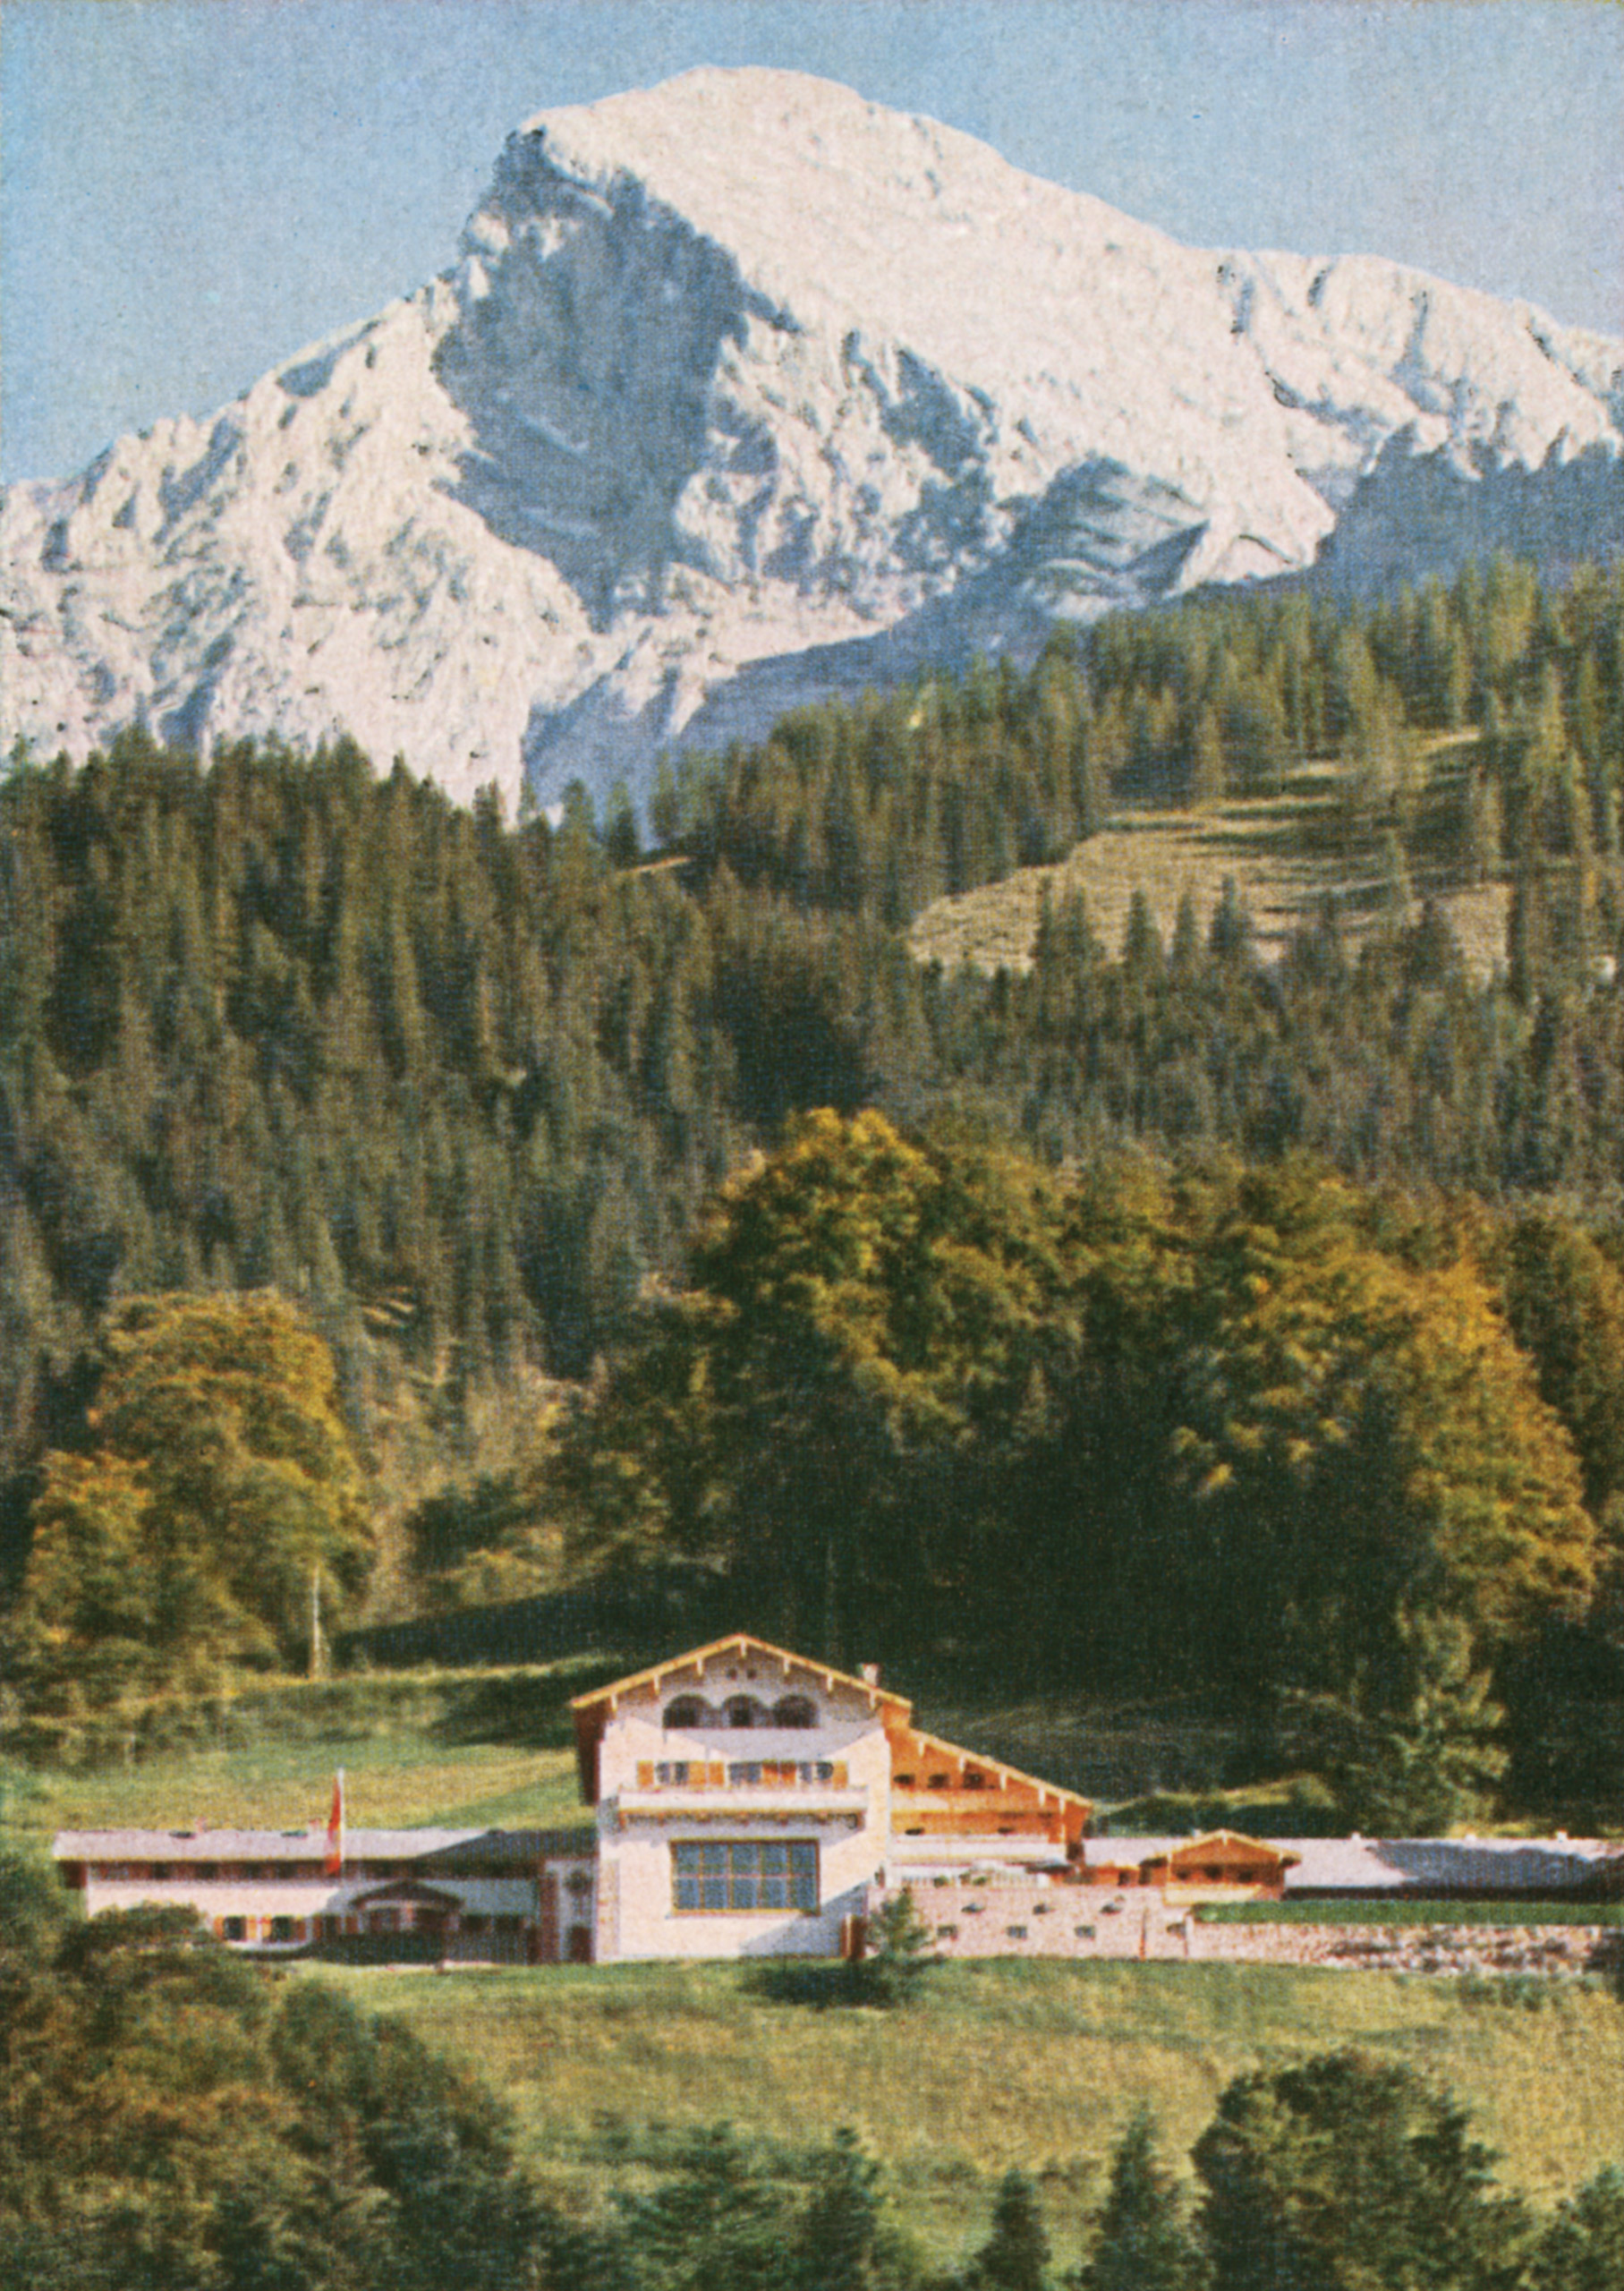 Heinrich Hoffmann, postcard of the Berghof, 1936.